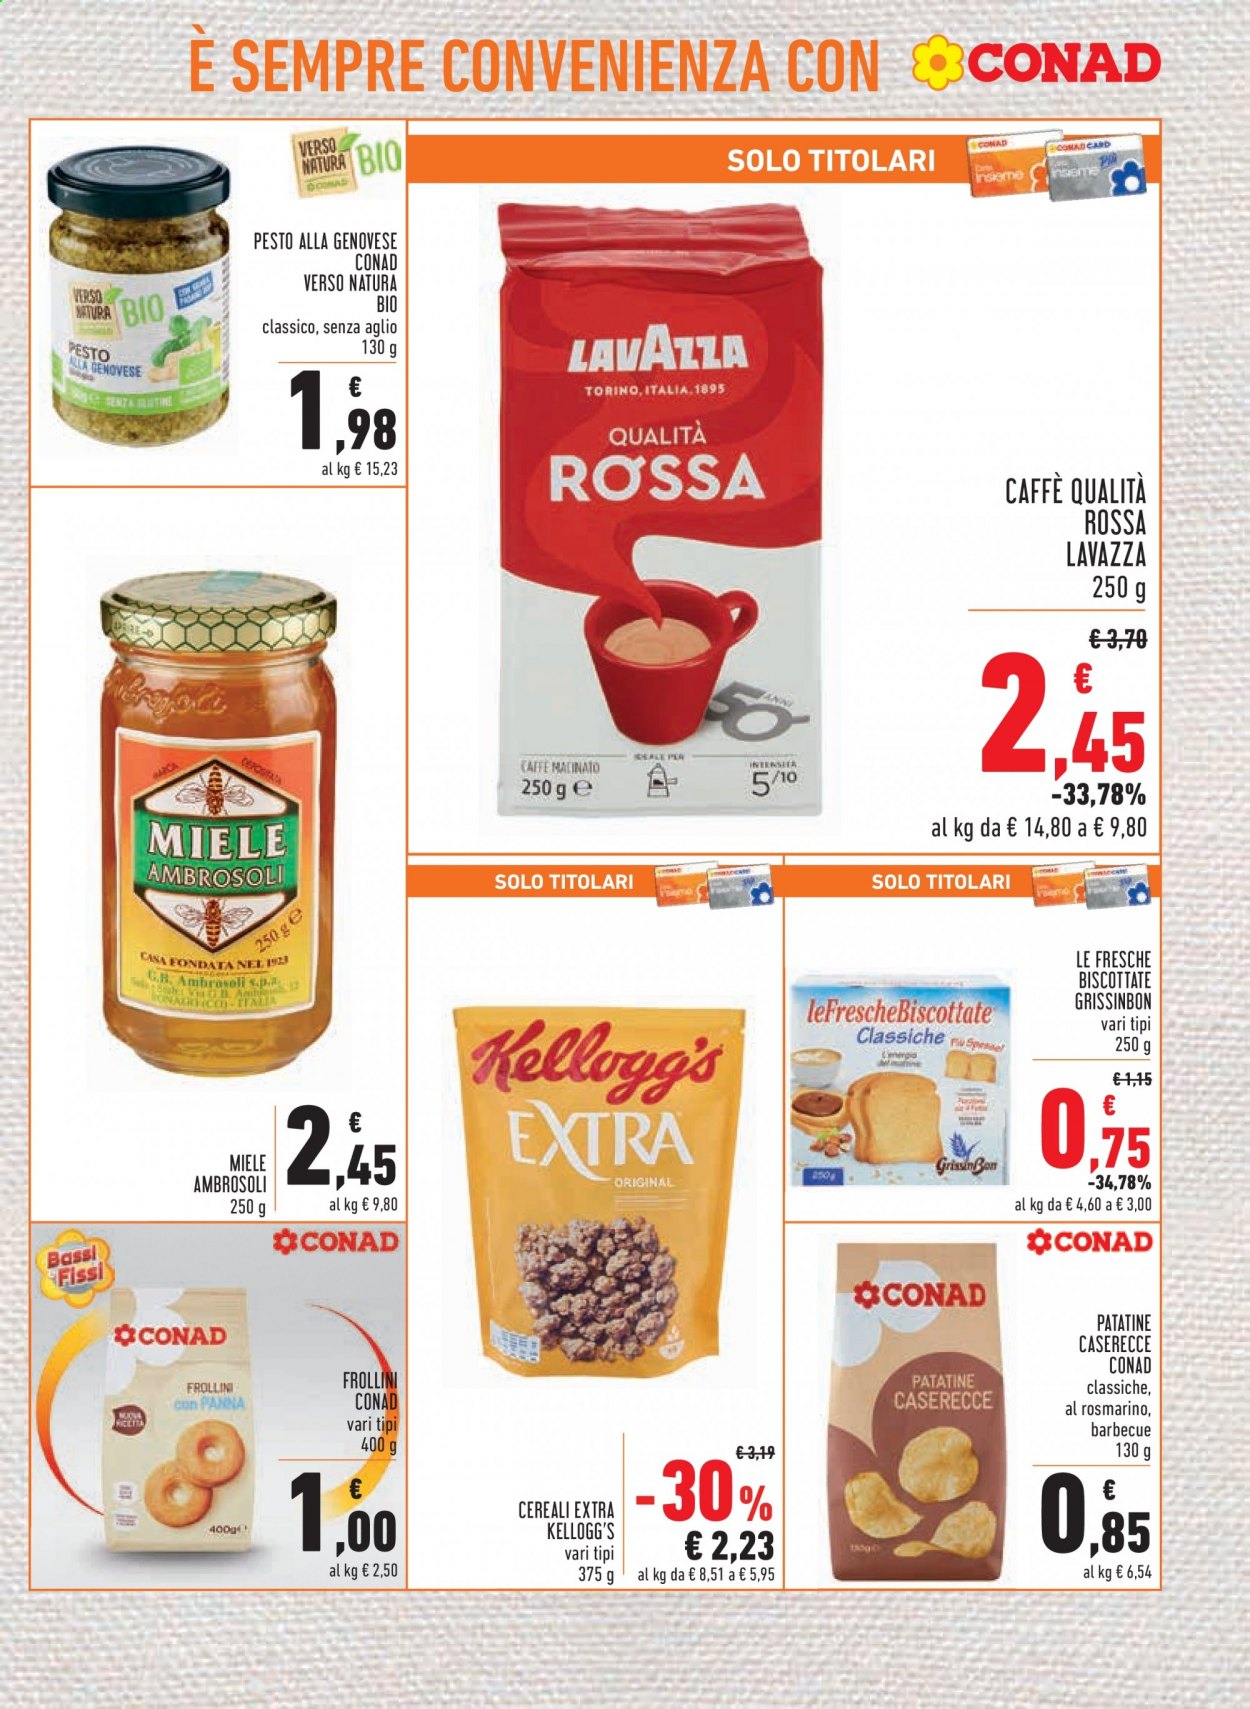 thumbnail - Volantino Conad - 15/4/2021 - 21/4/2021 - Prodotti in offerta - patatine, frollini, pesto, pesto alla genovese, cereali, Kellogg's, miele, caffè, Lavazza, caffè macinato. Pagina 9.